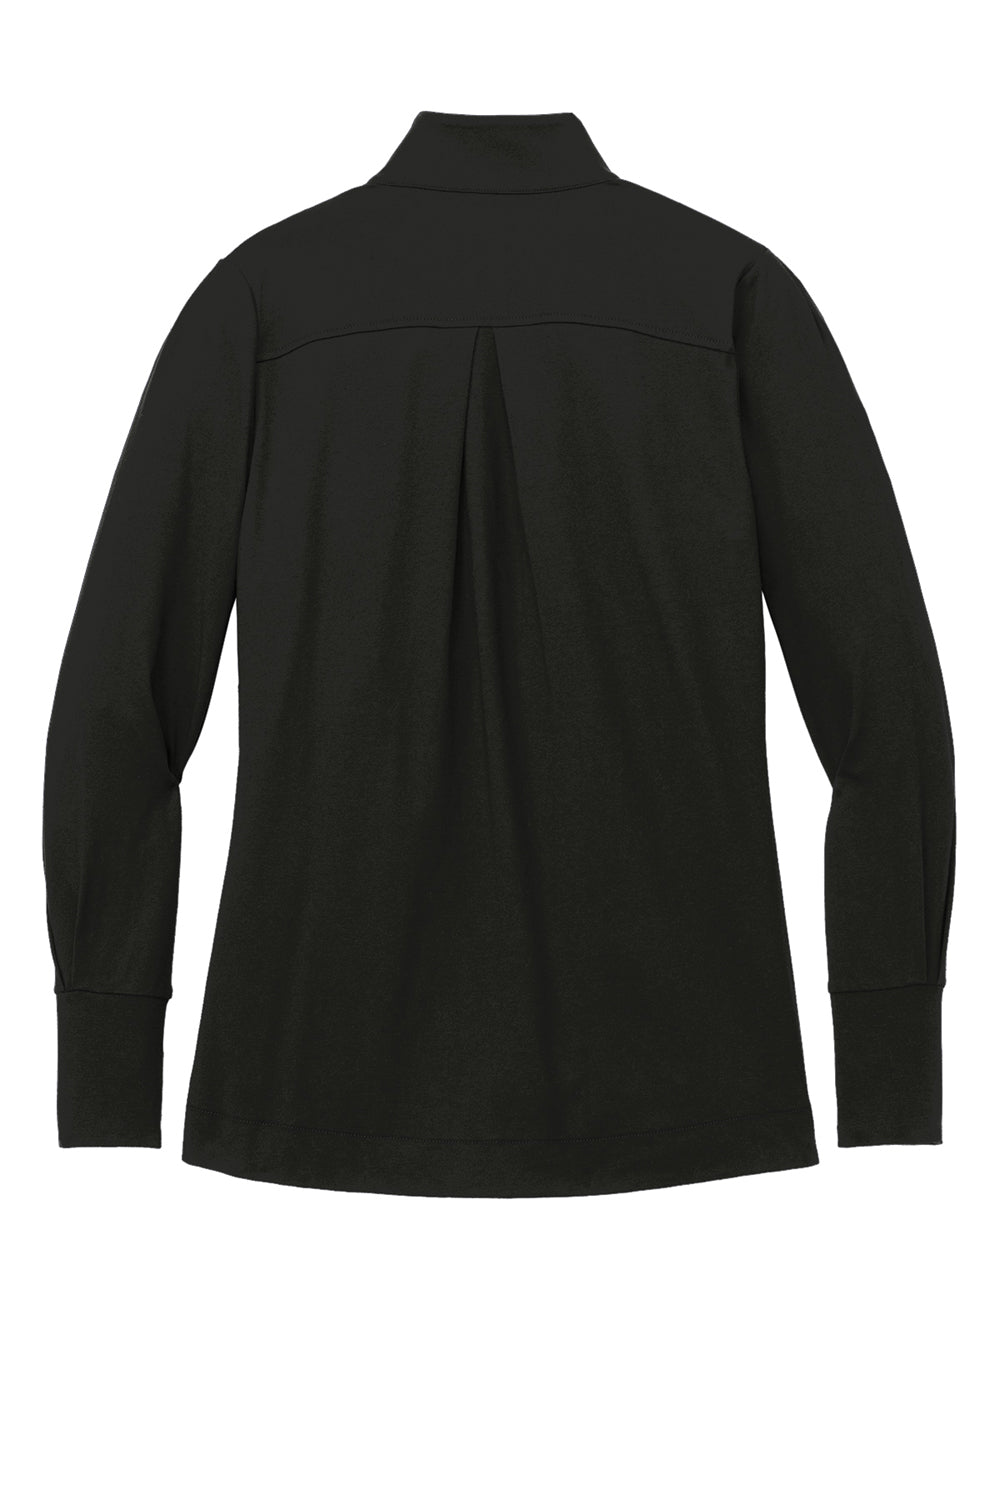 Port Authority Womens Fairway 1/4 Zip Sweatshirt Deep Black Flat Back